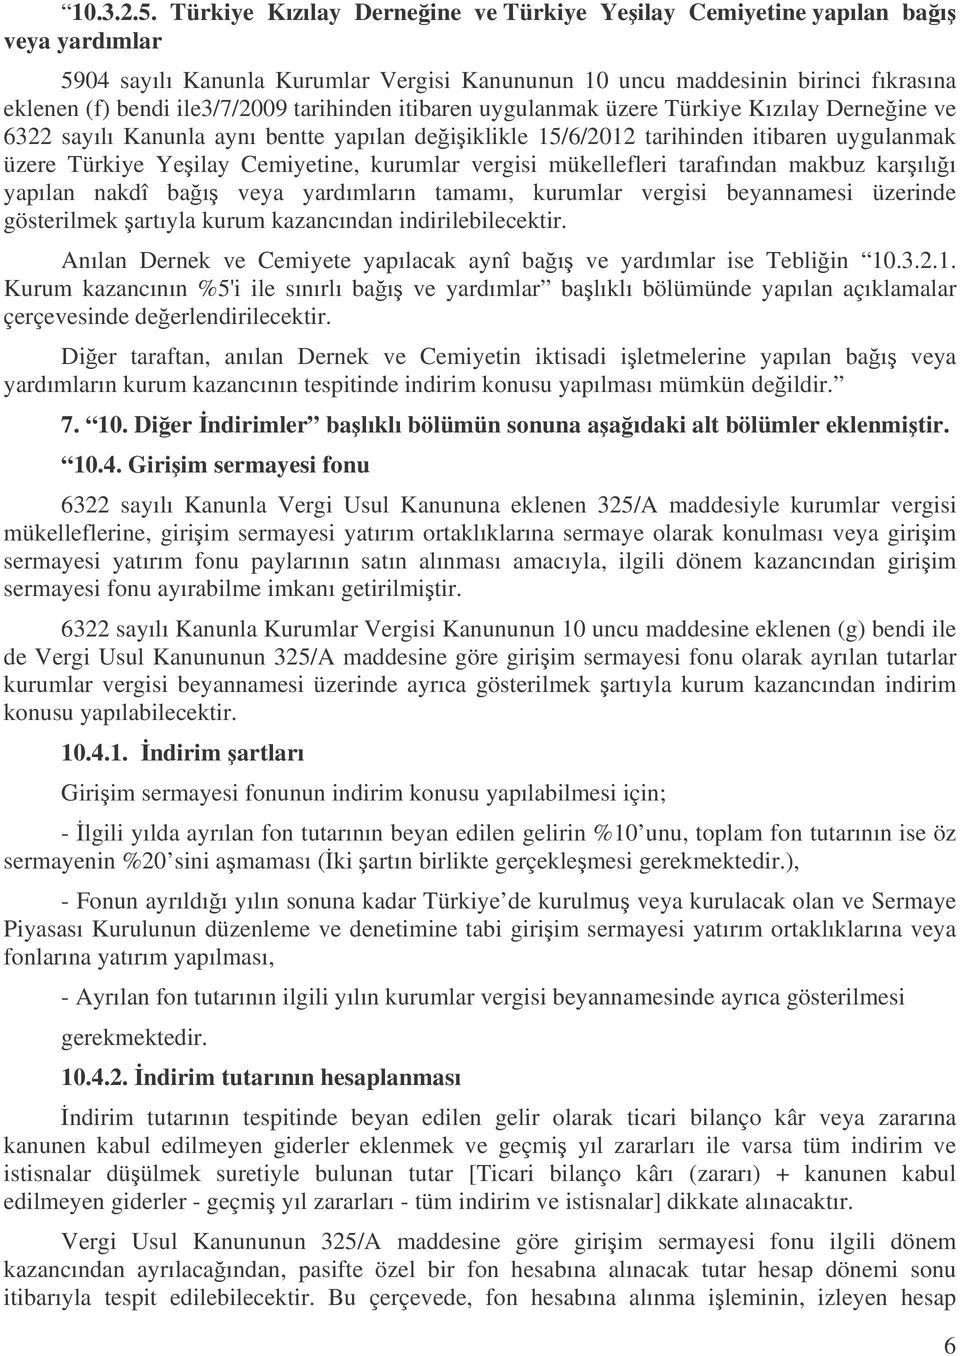 tarihinden itibaren uygulanmak üzere Türkiye Kızılay Derneine ve 6322 sayılı Kanunla aynı bentte yapılan deiiklikle 15/6/2012 tarihinden itibaren uygulanmak üzere Türkiye Yeilay Cemiyetine, kurumlar